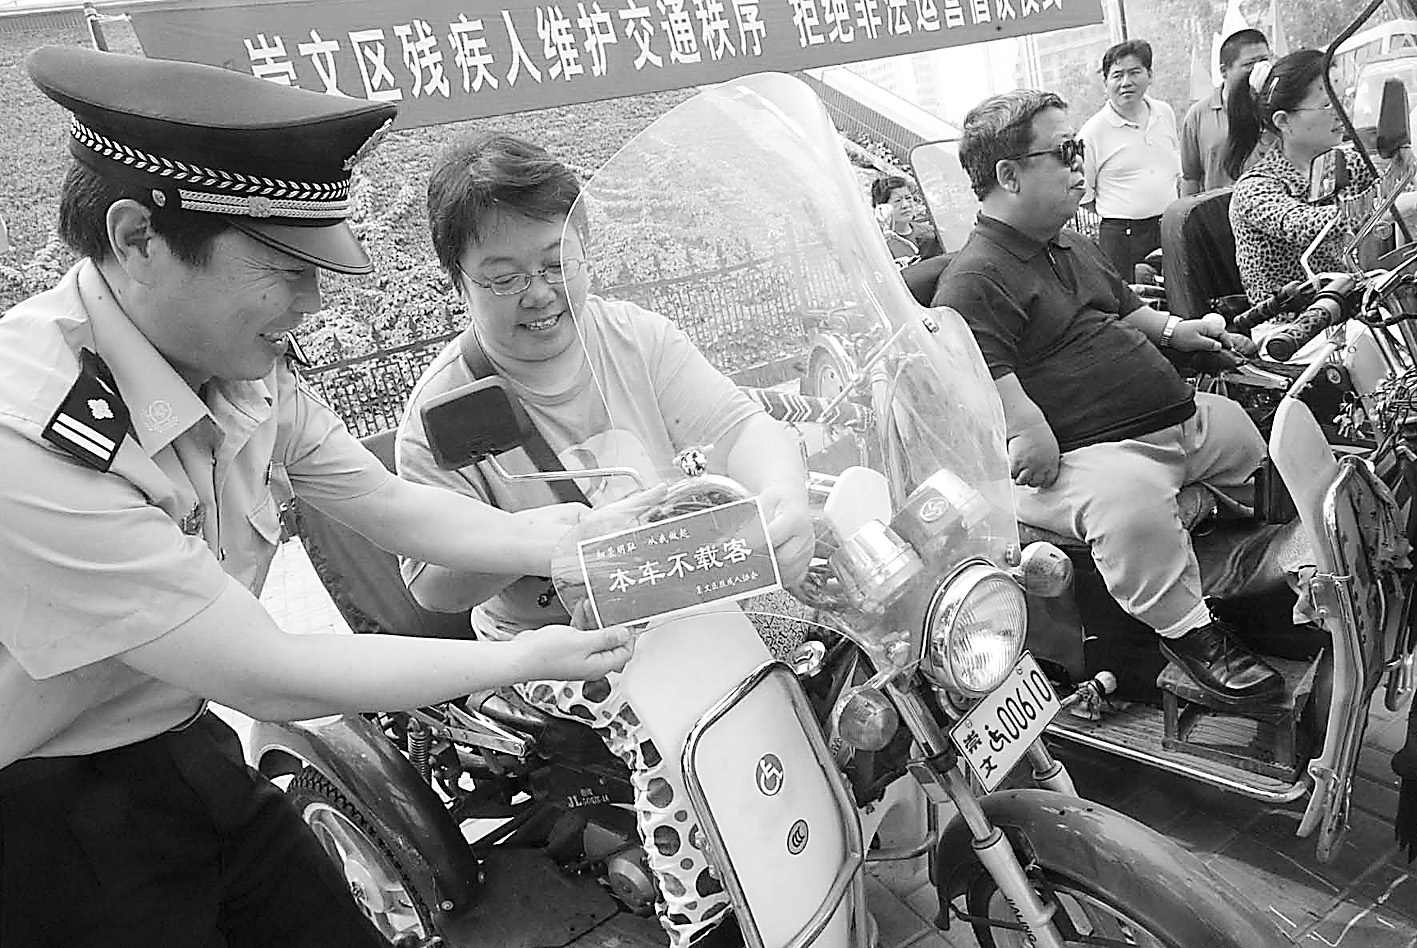 崇文区残疾人专用摩托车贴上 本车不载客 (图)